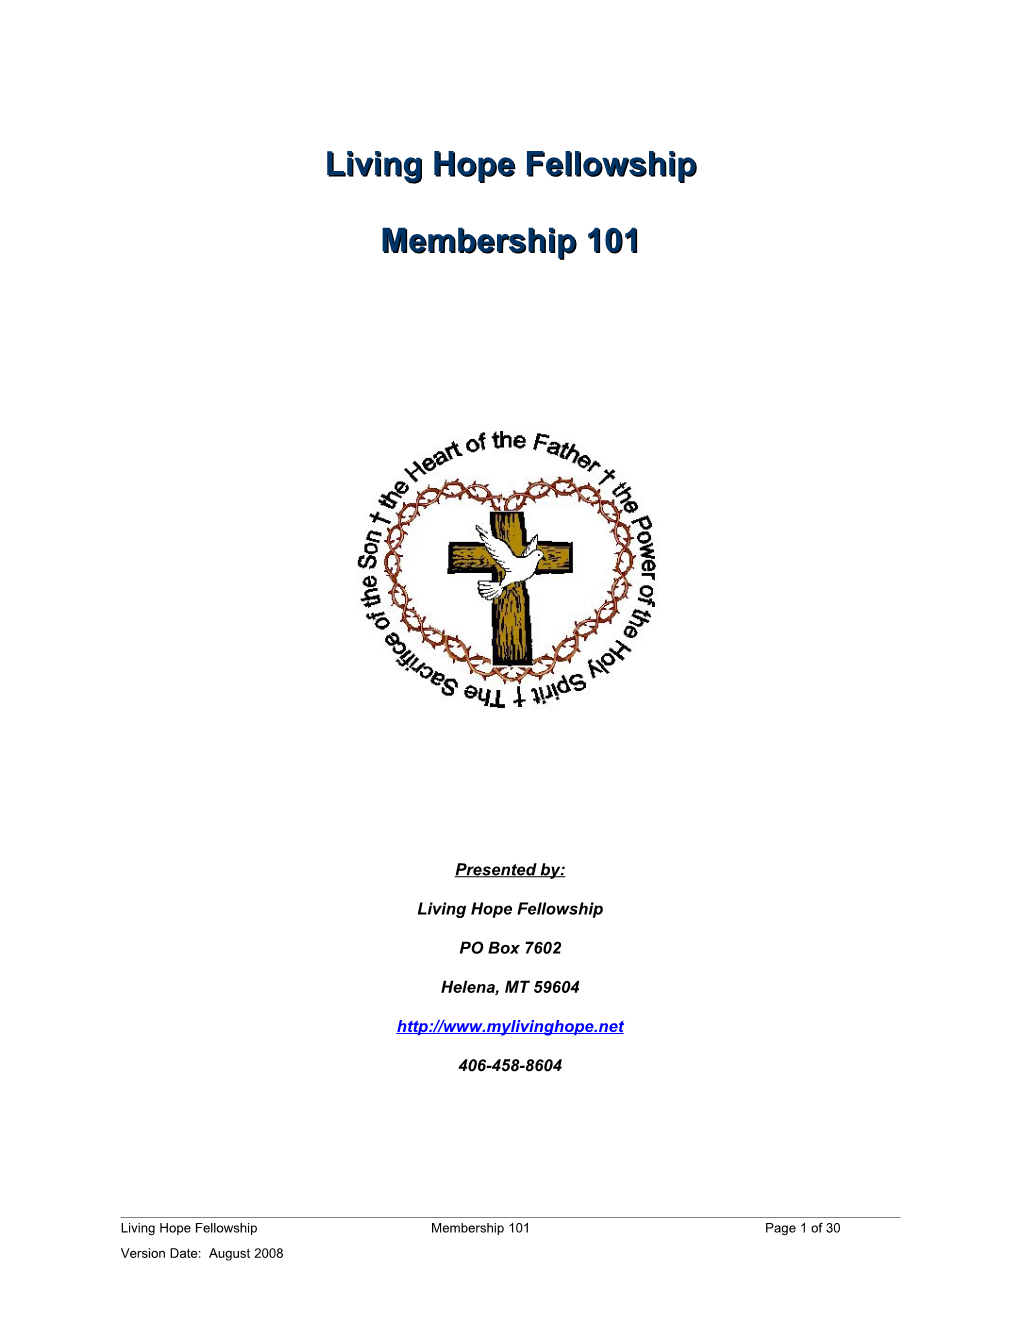 Welcome to Living Hope Fellowship Membership 101!